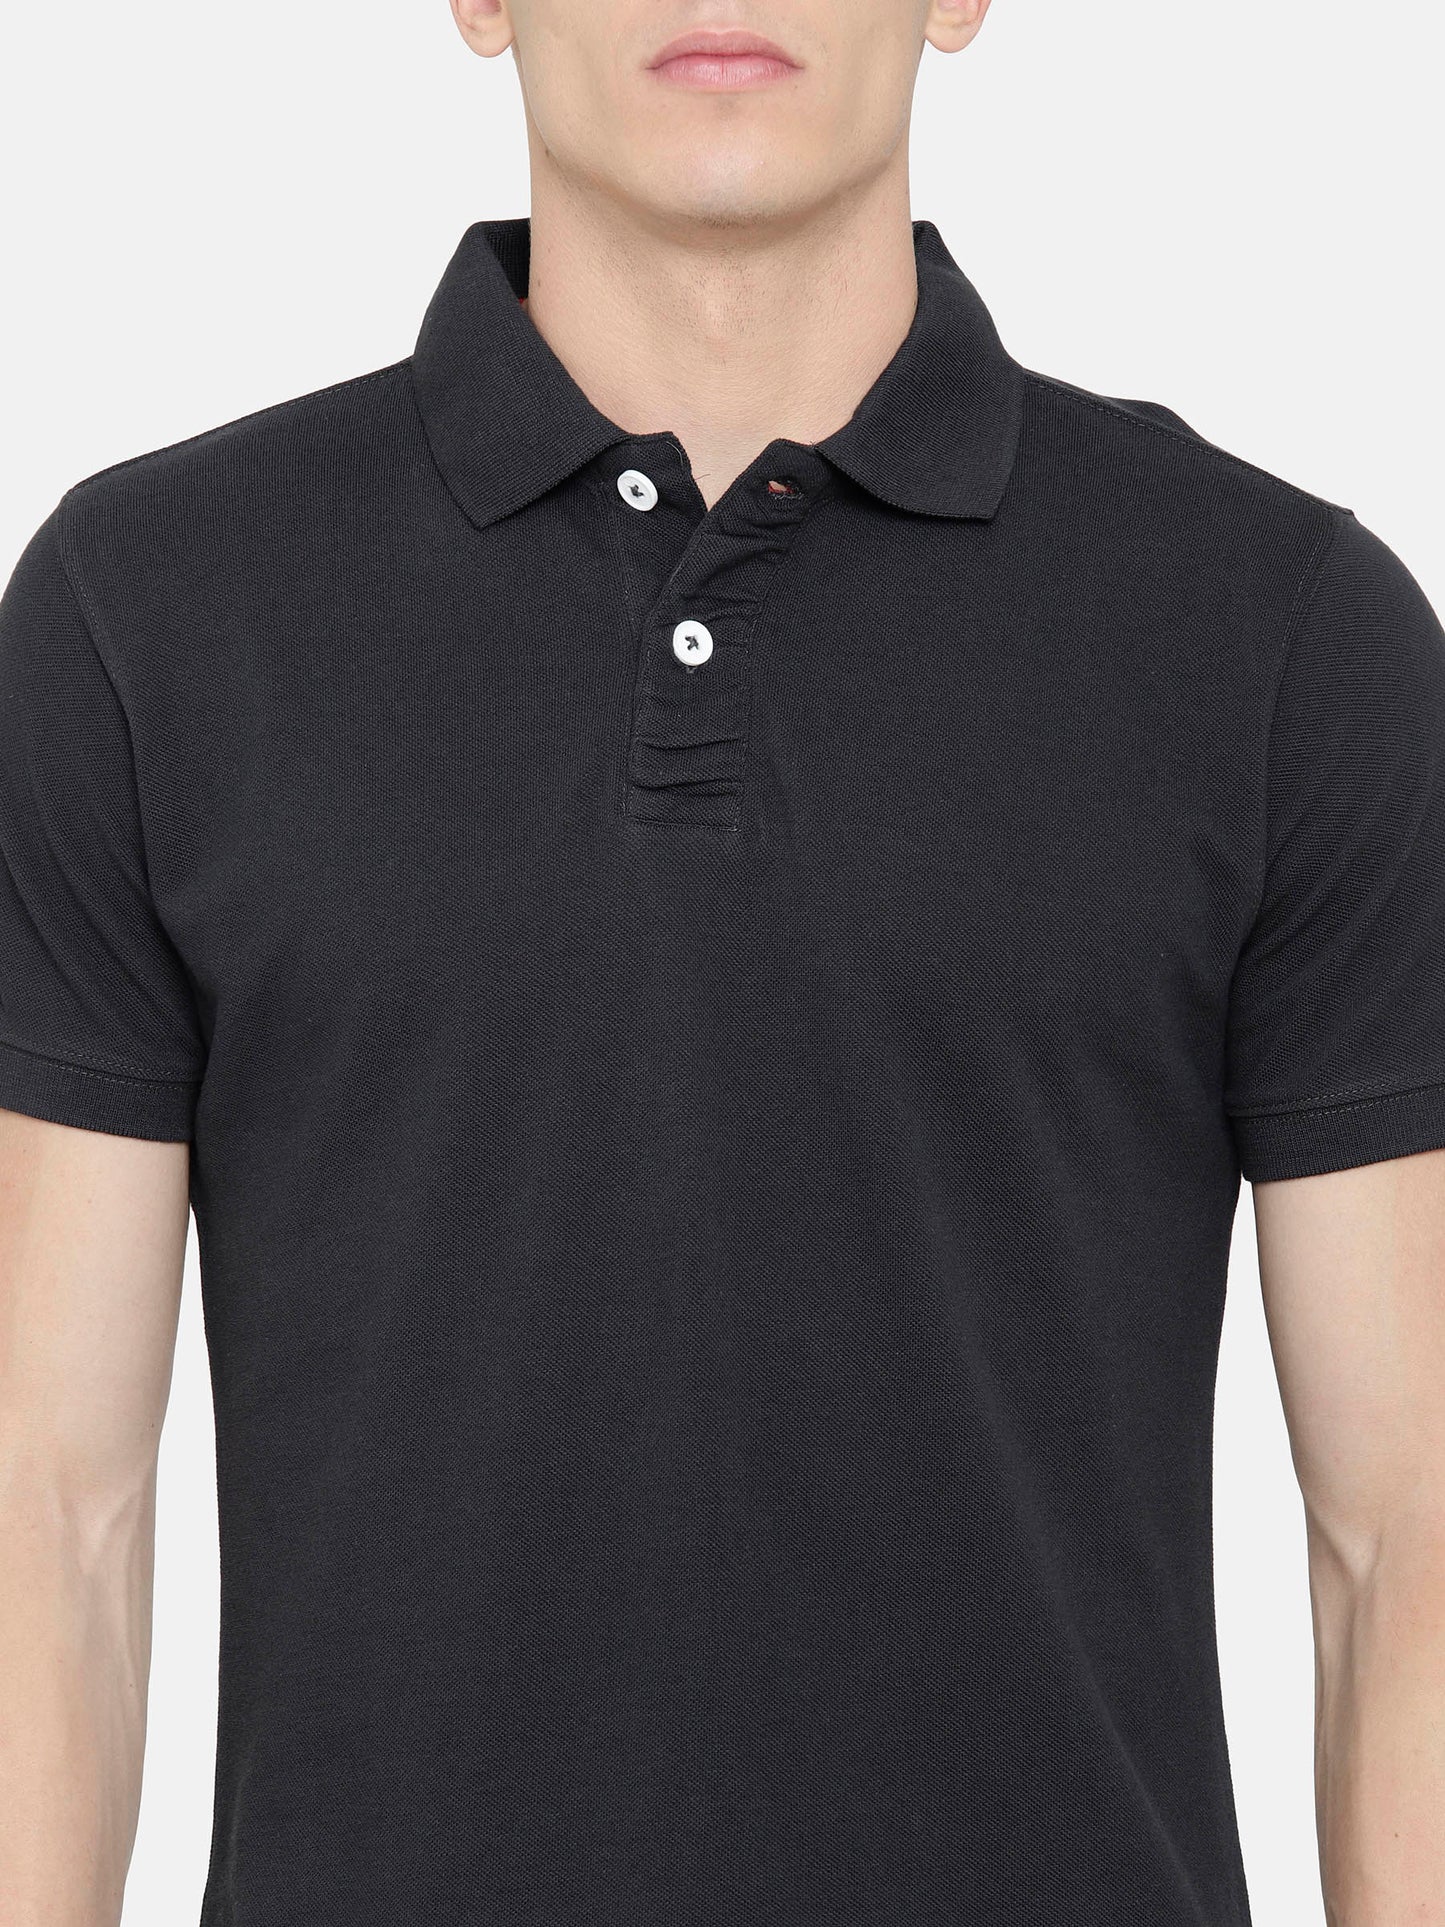 Dark Grey Polo T-Shirt pique